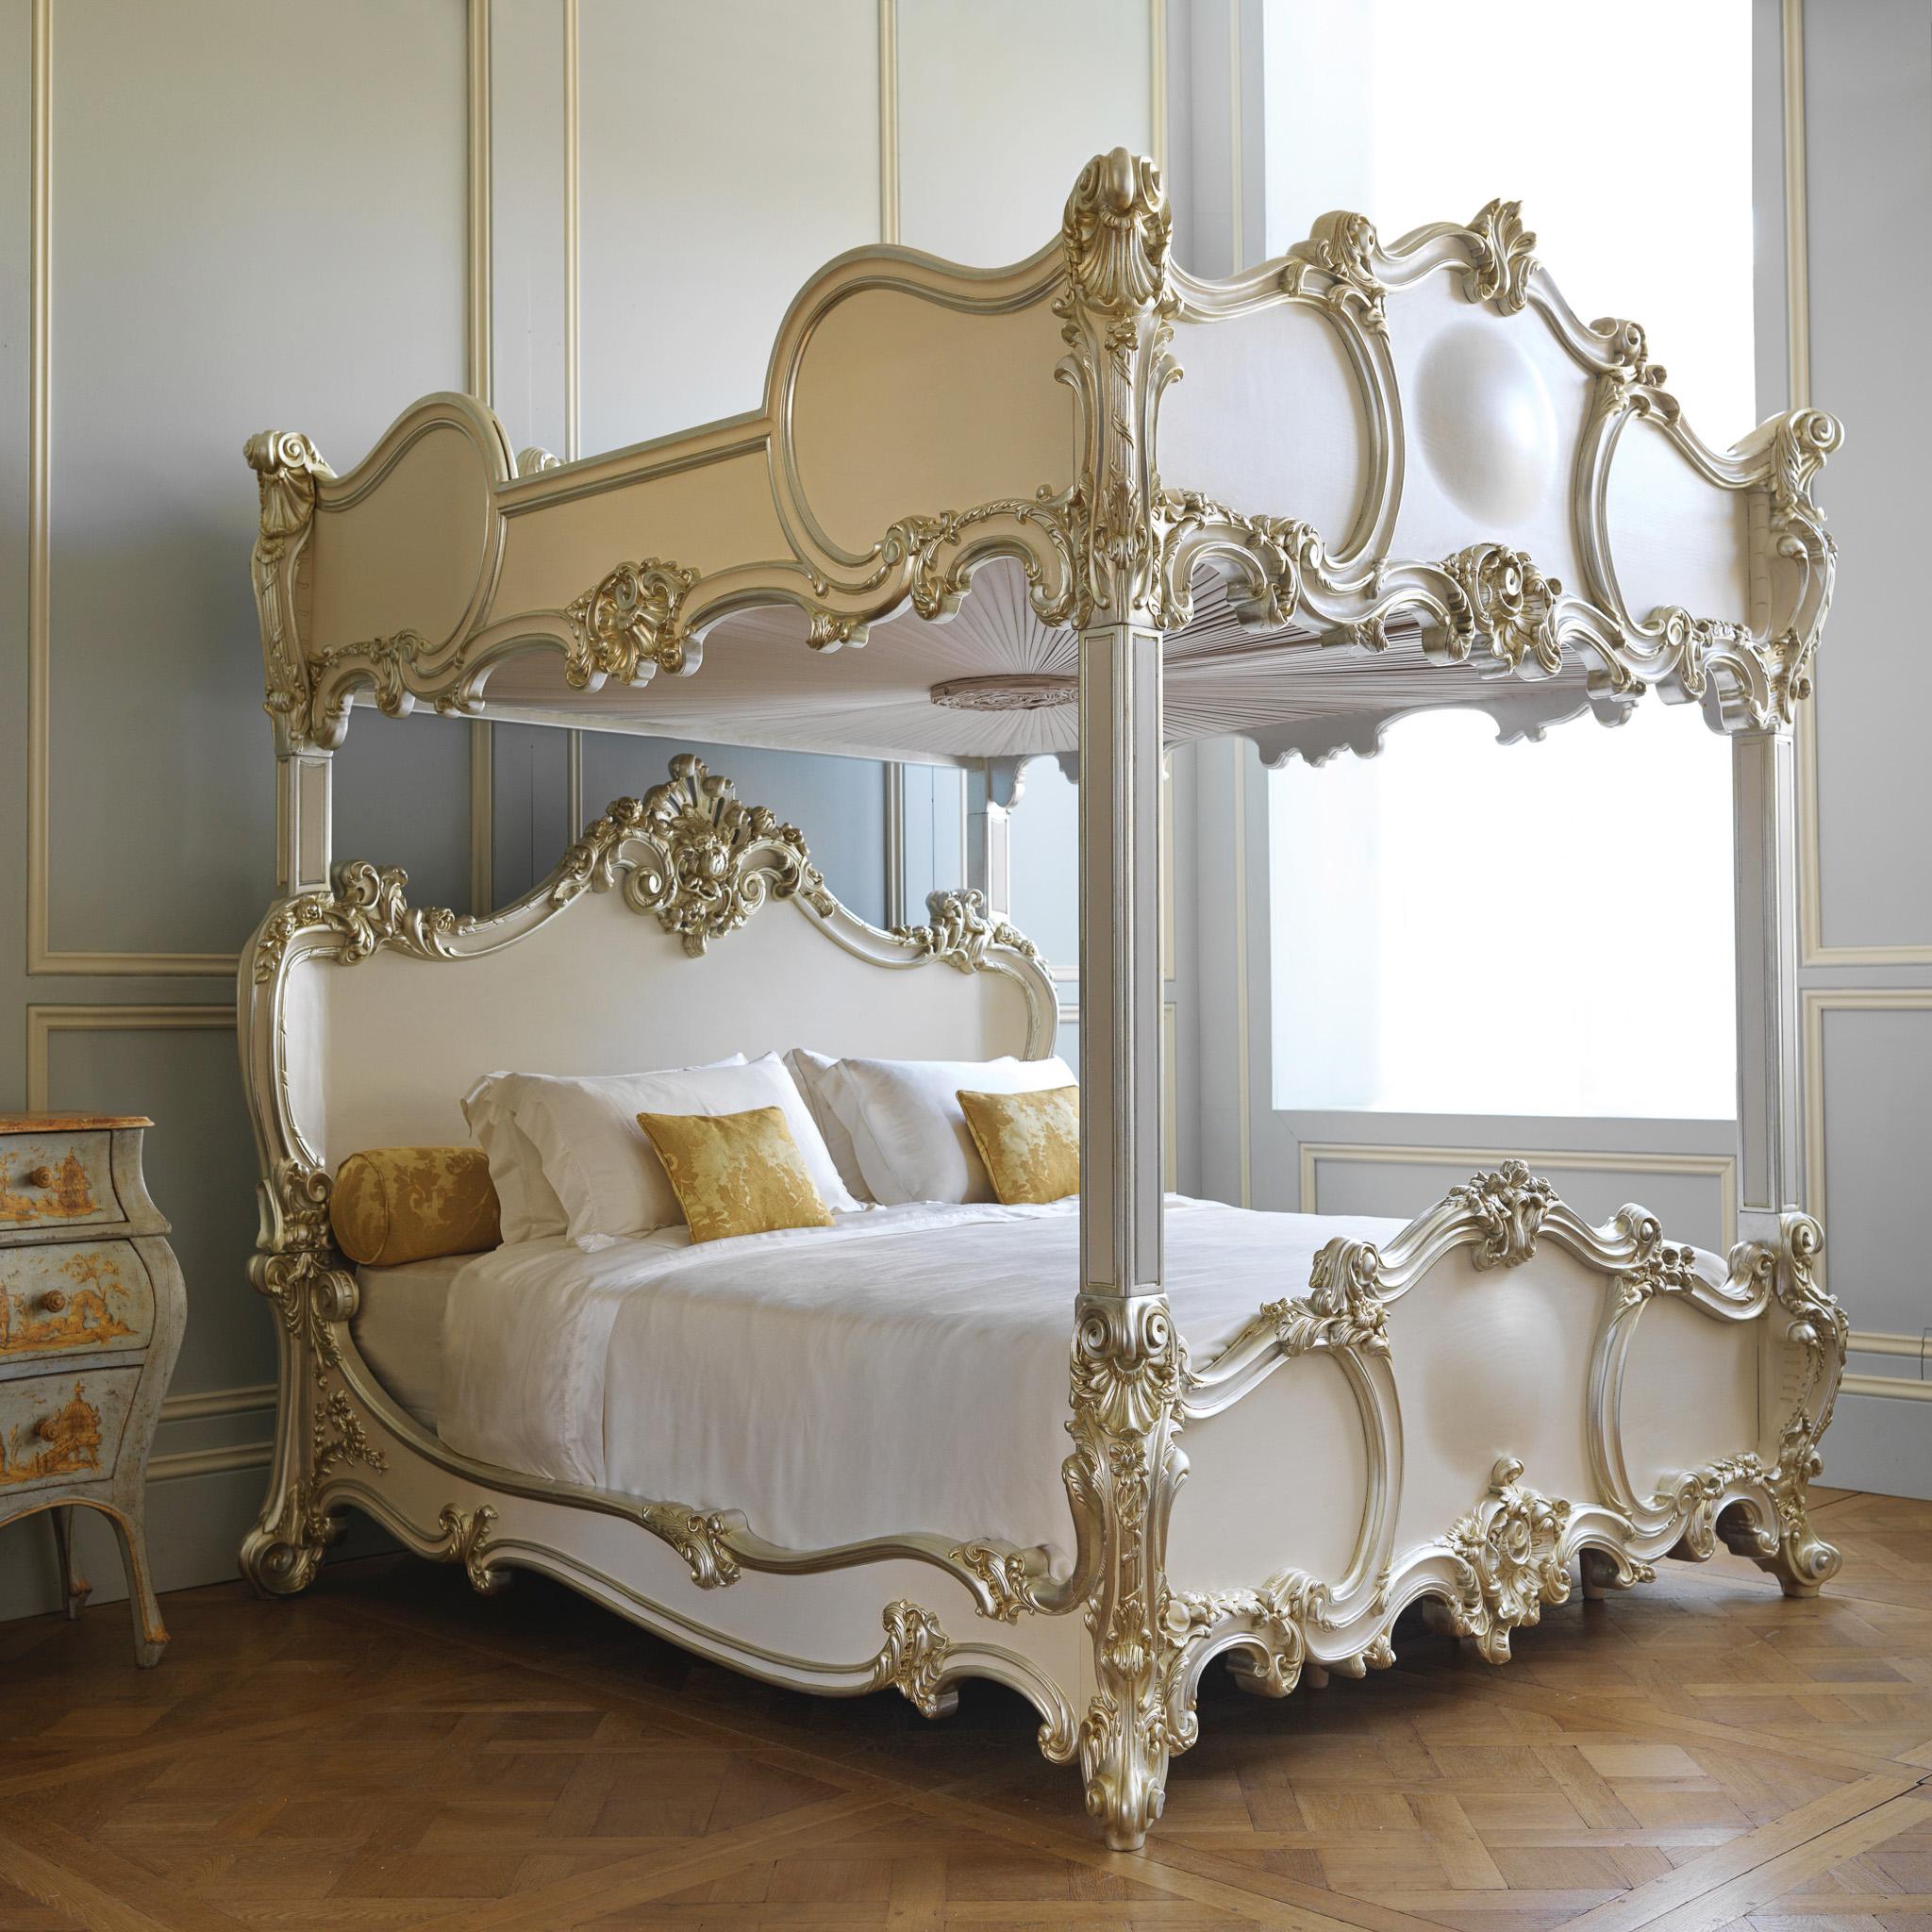 Ein einzigartiges Bett von La Maison London, Meister der feinen Holzschnitzerei - Ein Rokoko-Stil Four Poster Bed, das ein verstecktes Top-Bett innerhalb seiner 2-Ebenen-Design hat. Der obere Teil ist wie ein Baldachin gestaltet, so dass das Bett